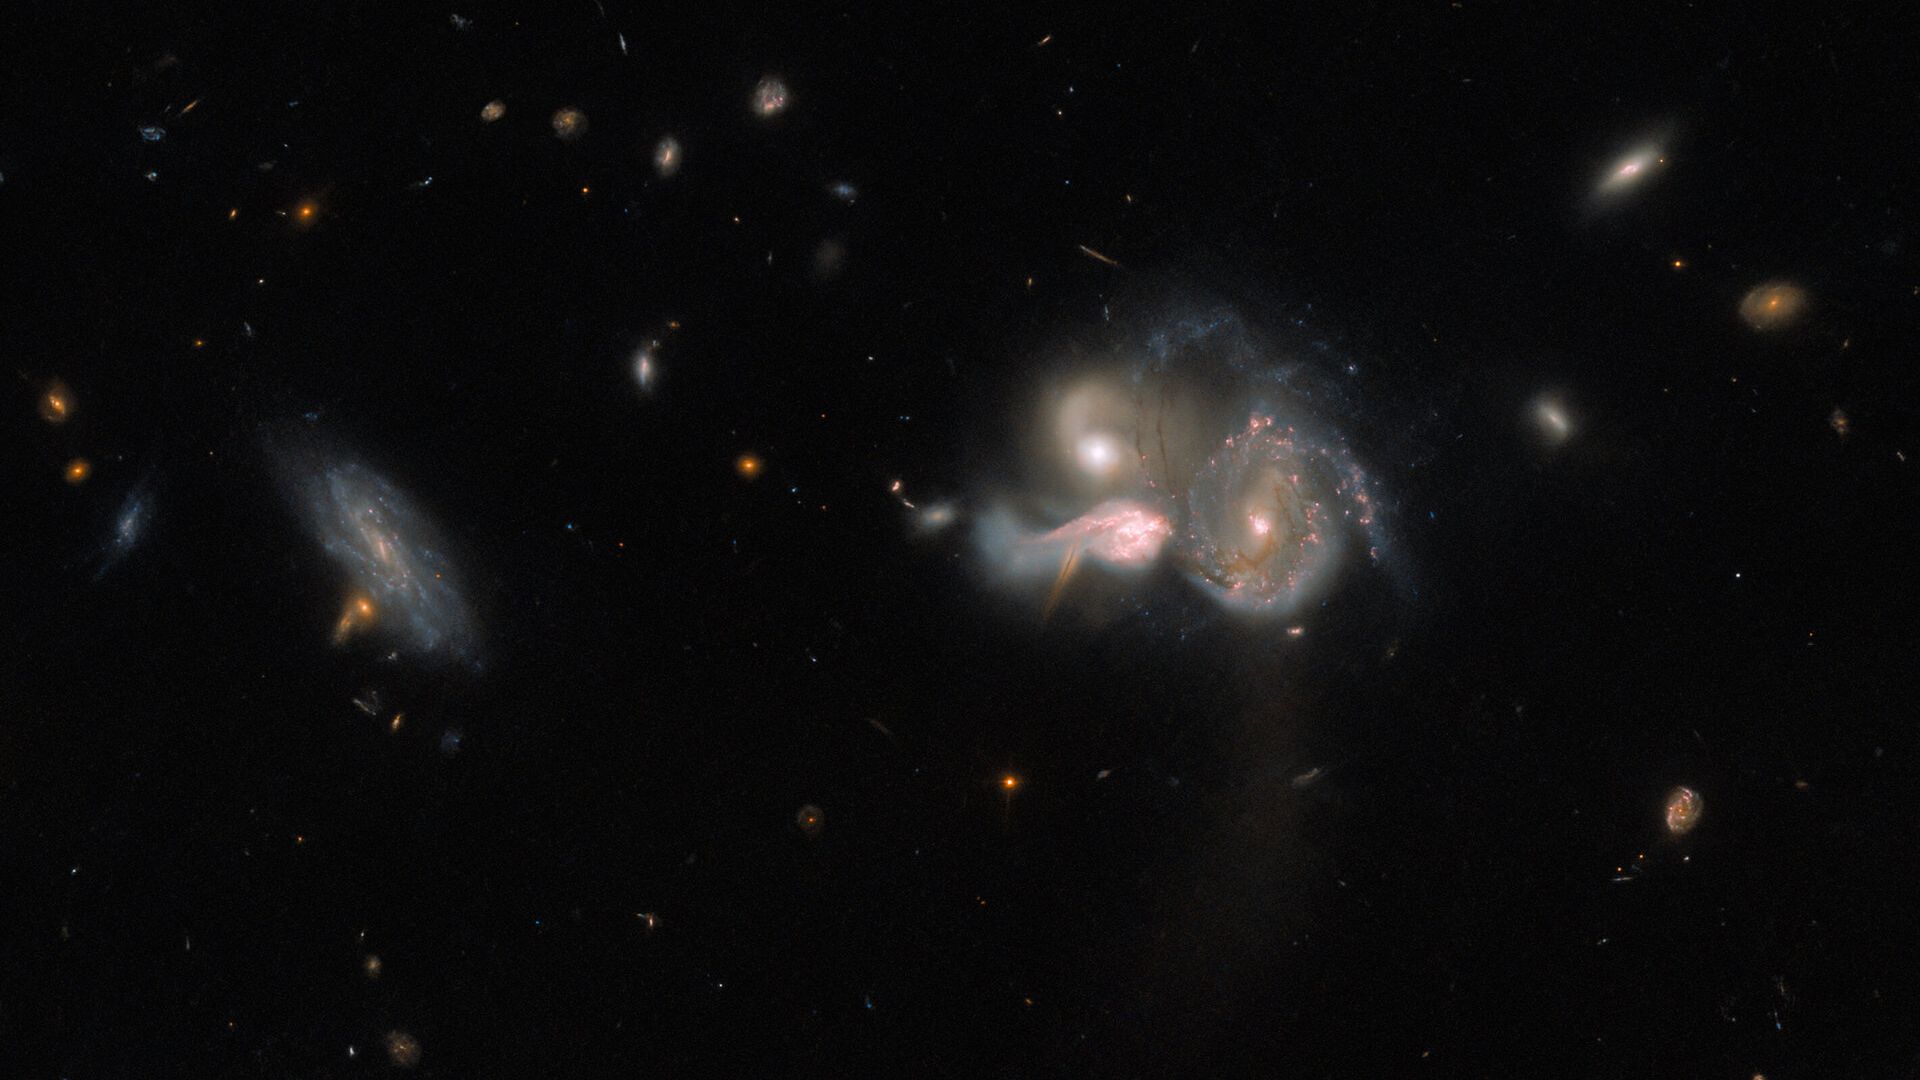 Este espetacular trio de galáxias em fusão está localizado a cerca de 1,04 bilhões de anos luz, na Constelação de Boötes (“O Boieiro”). Em rota de colisão, as três galáxias acabarão por se fundir em uma única galáxia maior, distorcendo suas estruturas espirais por conta da interação gravitacional. À esquerda, também vê-se uma quarta galáxia que parece flutuar serenamente ao lado da colisão. O trio à direita, conhecido como SDSSCGB 10189, é uma combinação relativamente rara de grandes galáxias com formação estelar, distantes apenas 50 mil anos-luz uma da outra